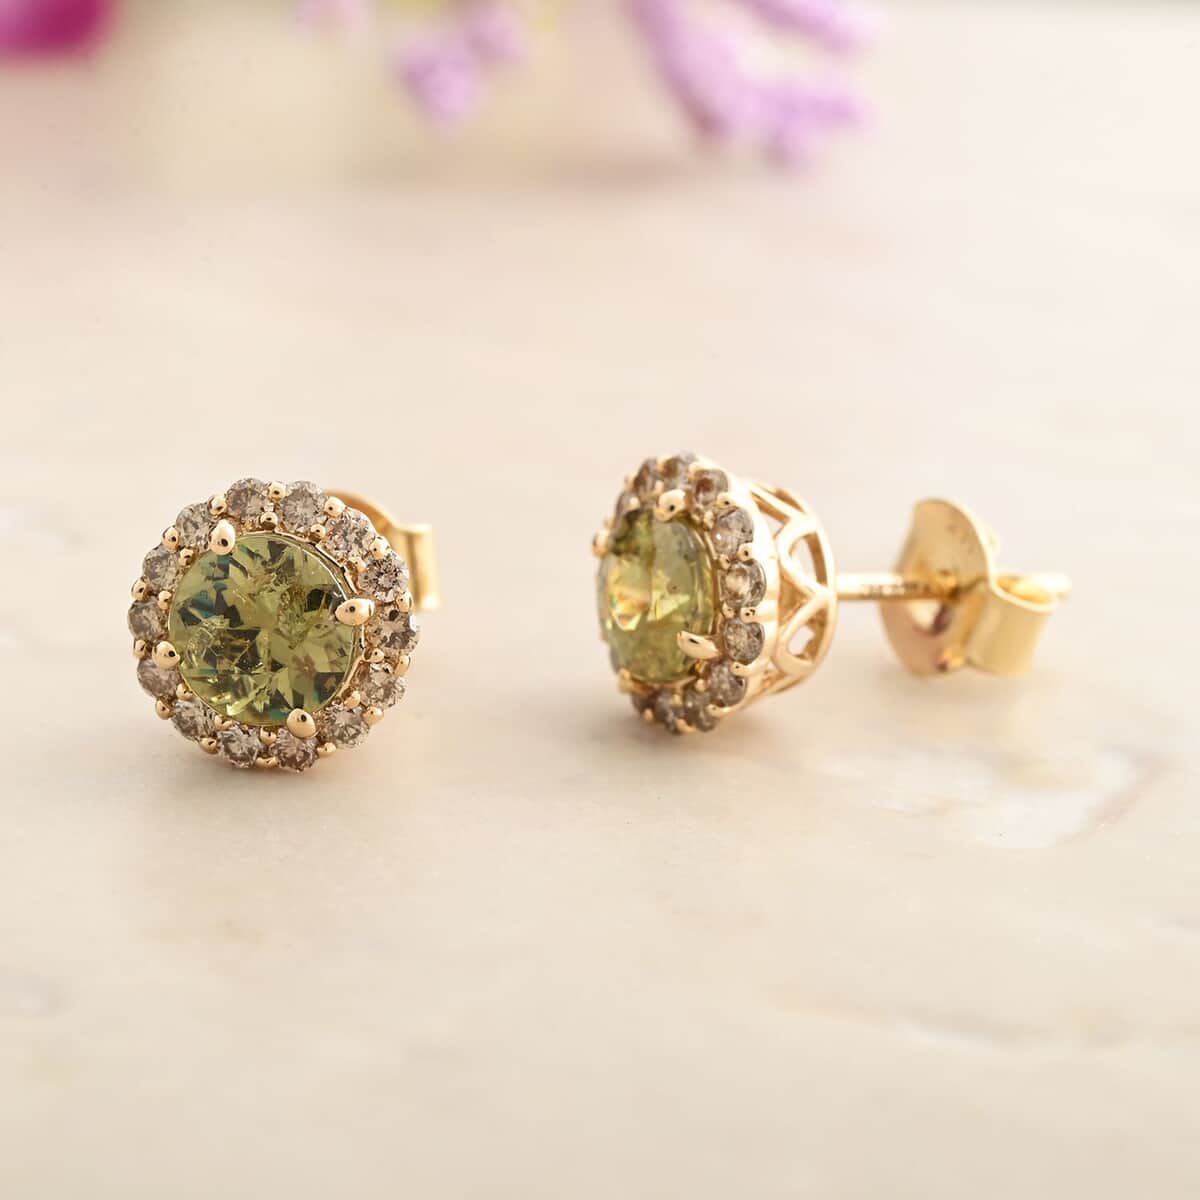 Luxoro 14K Yellow Gold AAA Ambanja Demantoid Garnet and I2 Diamond Earrings 2.10 ctw image number 1